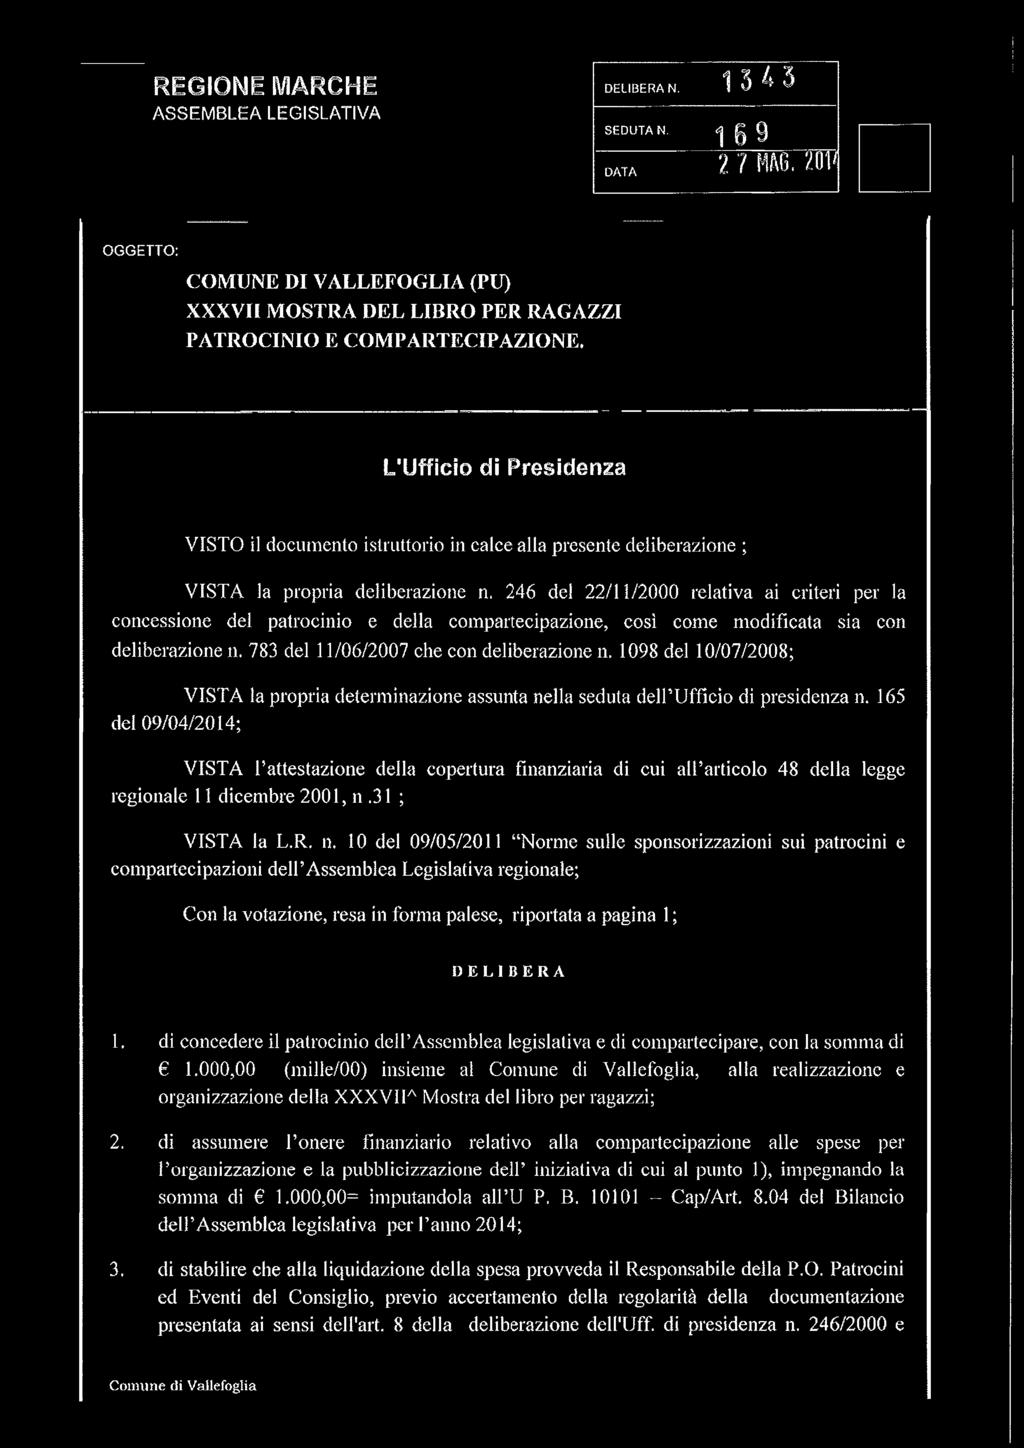 246 del 22/11/2000 relativa ai criteri per la concessione del patrocinio e della compartecipazione, così come modificata sia con deliberazione n. 783 del 11/06/2007 che con deliberazione n.